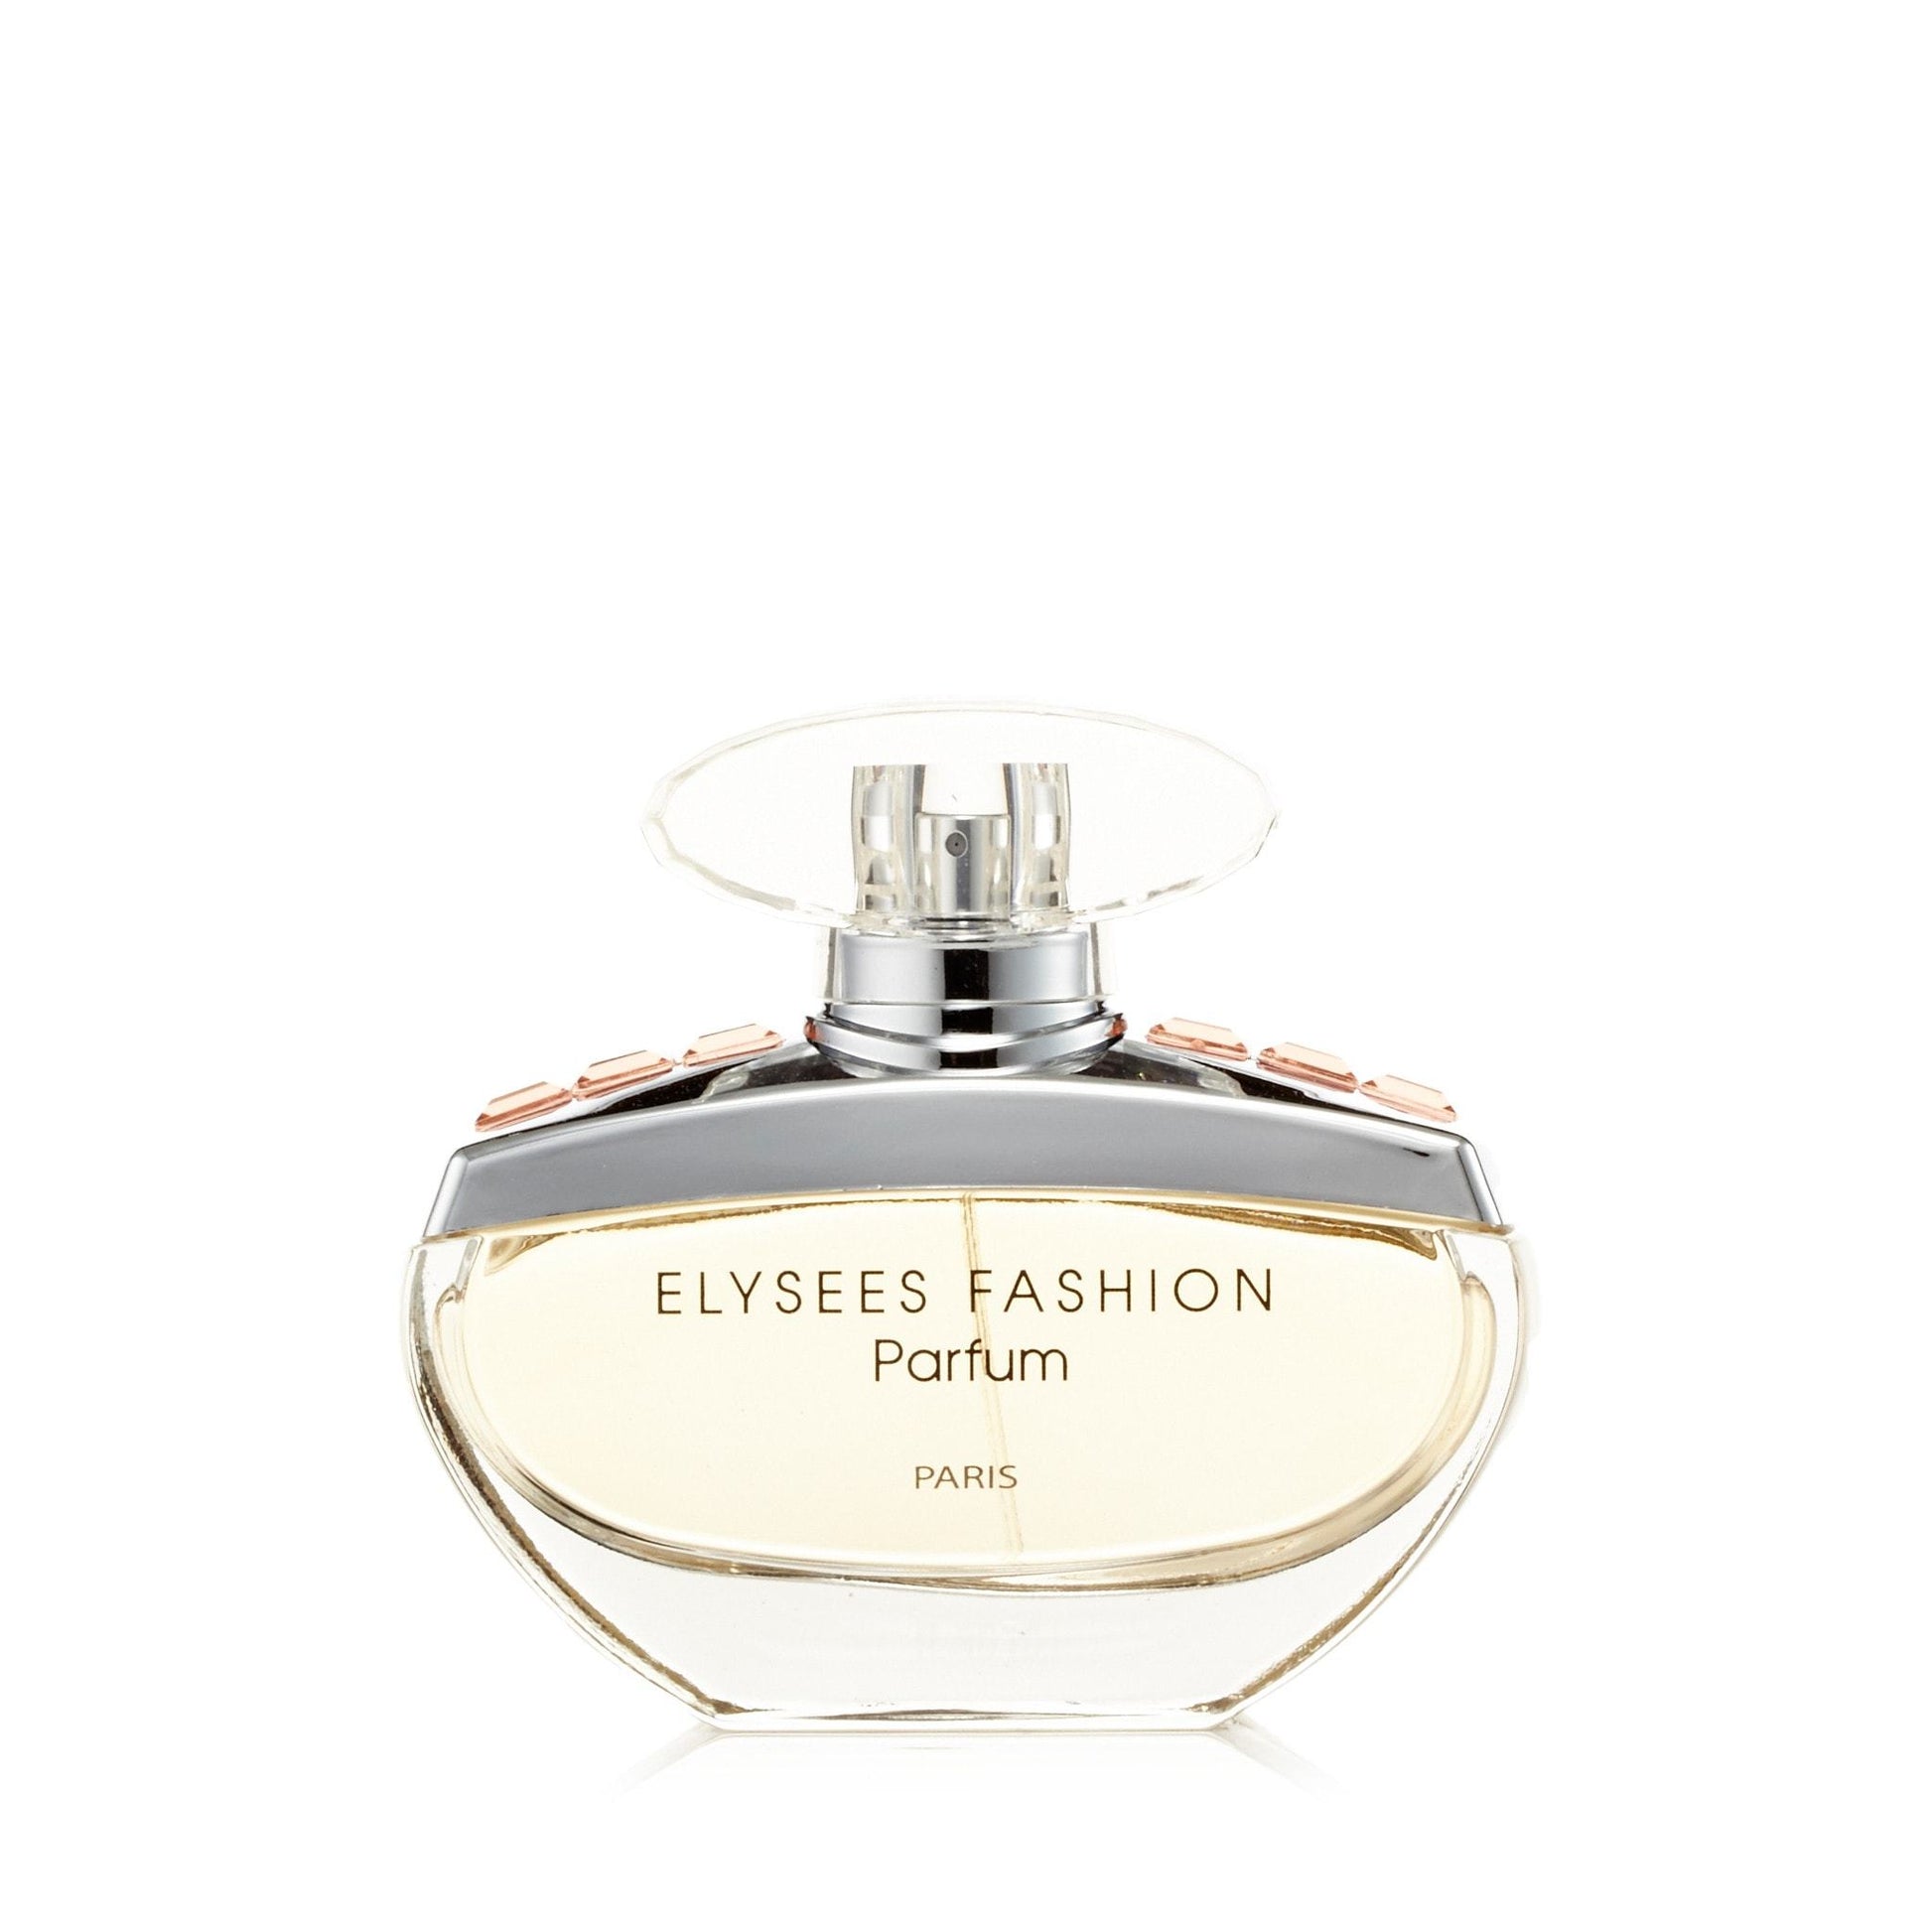 Elysees Fashion Eau de Parfum Spray for Women, Product image 1